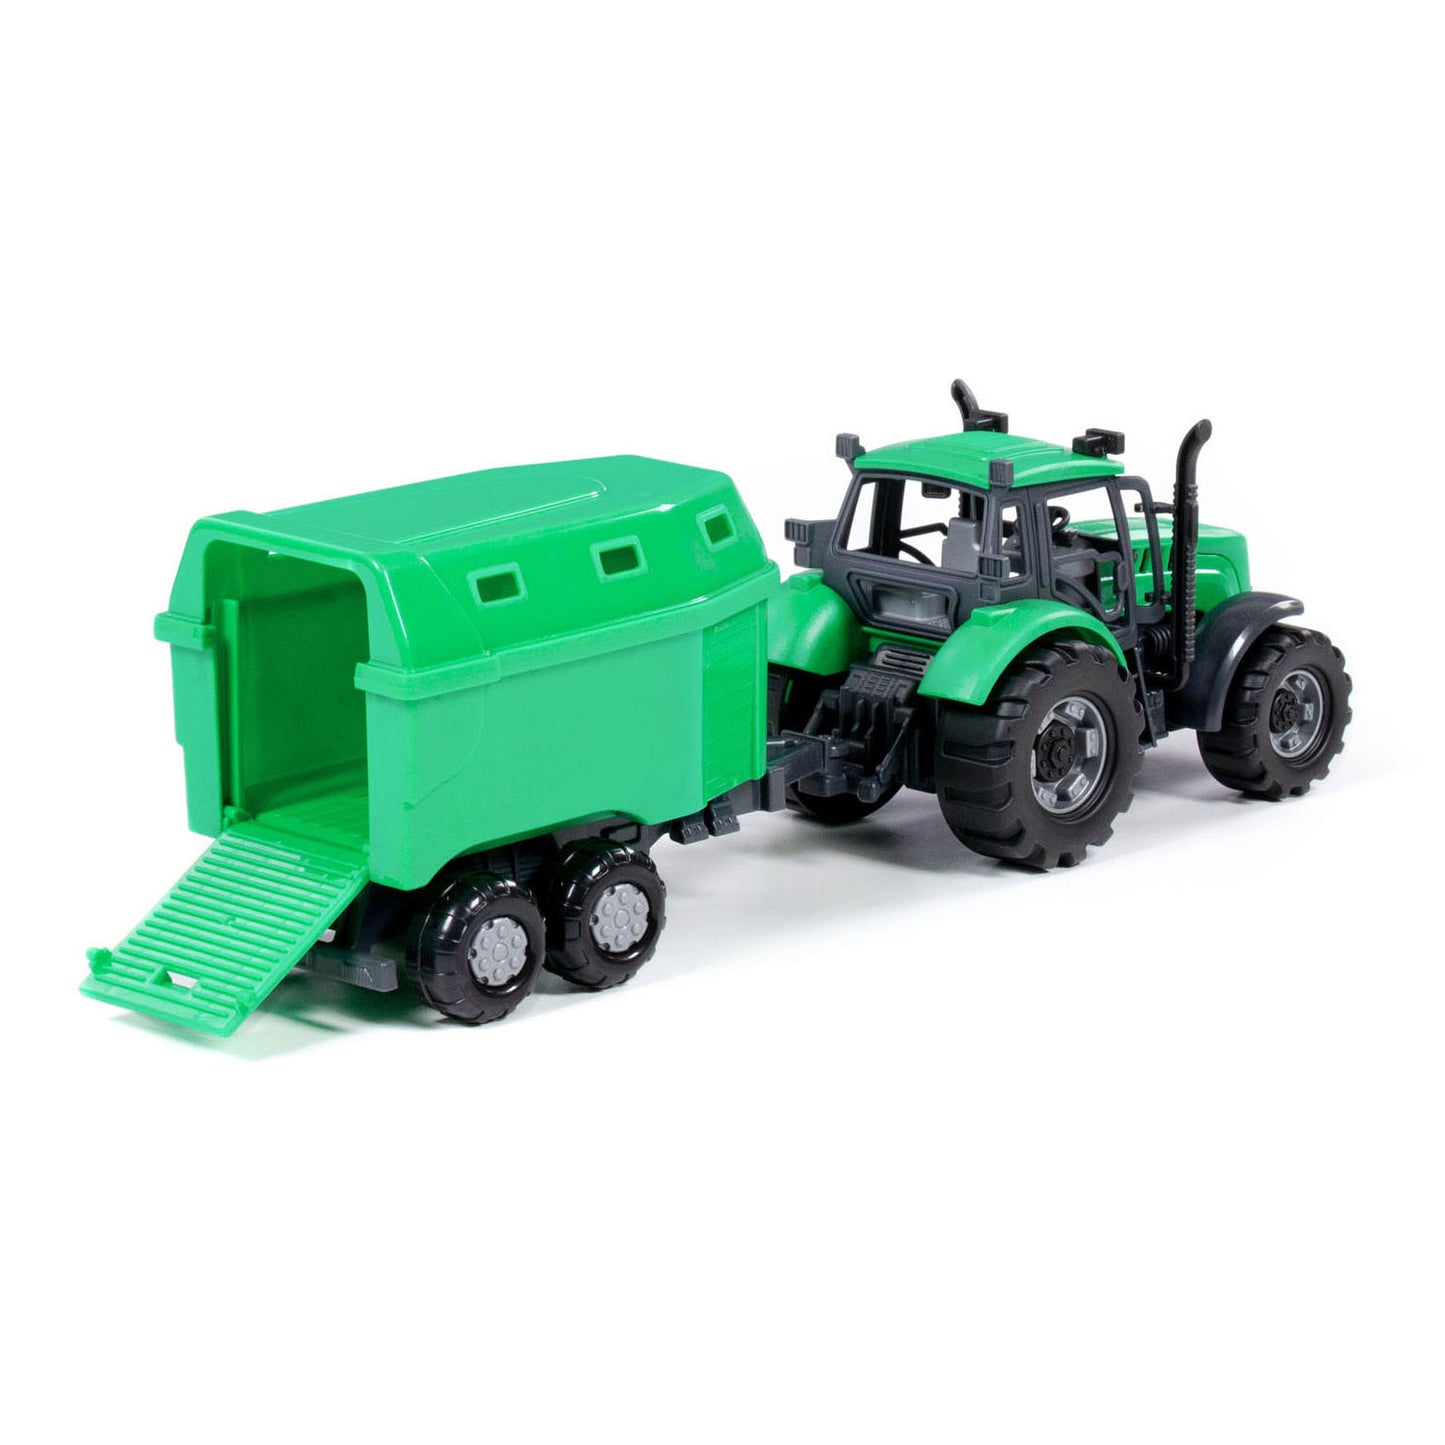 Cavallino Toys Cavallino Tractor met Paardentrailer Groen, Schaal 1:32